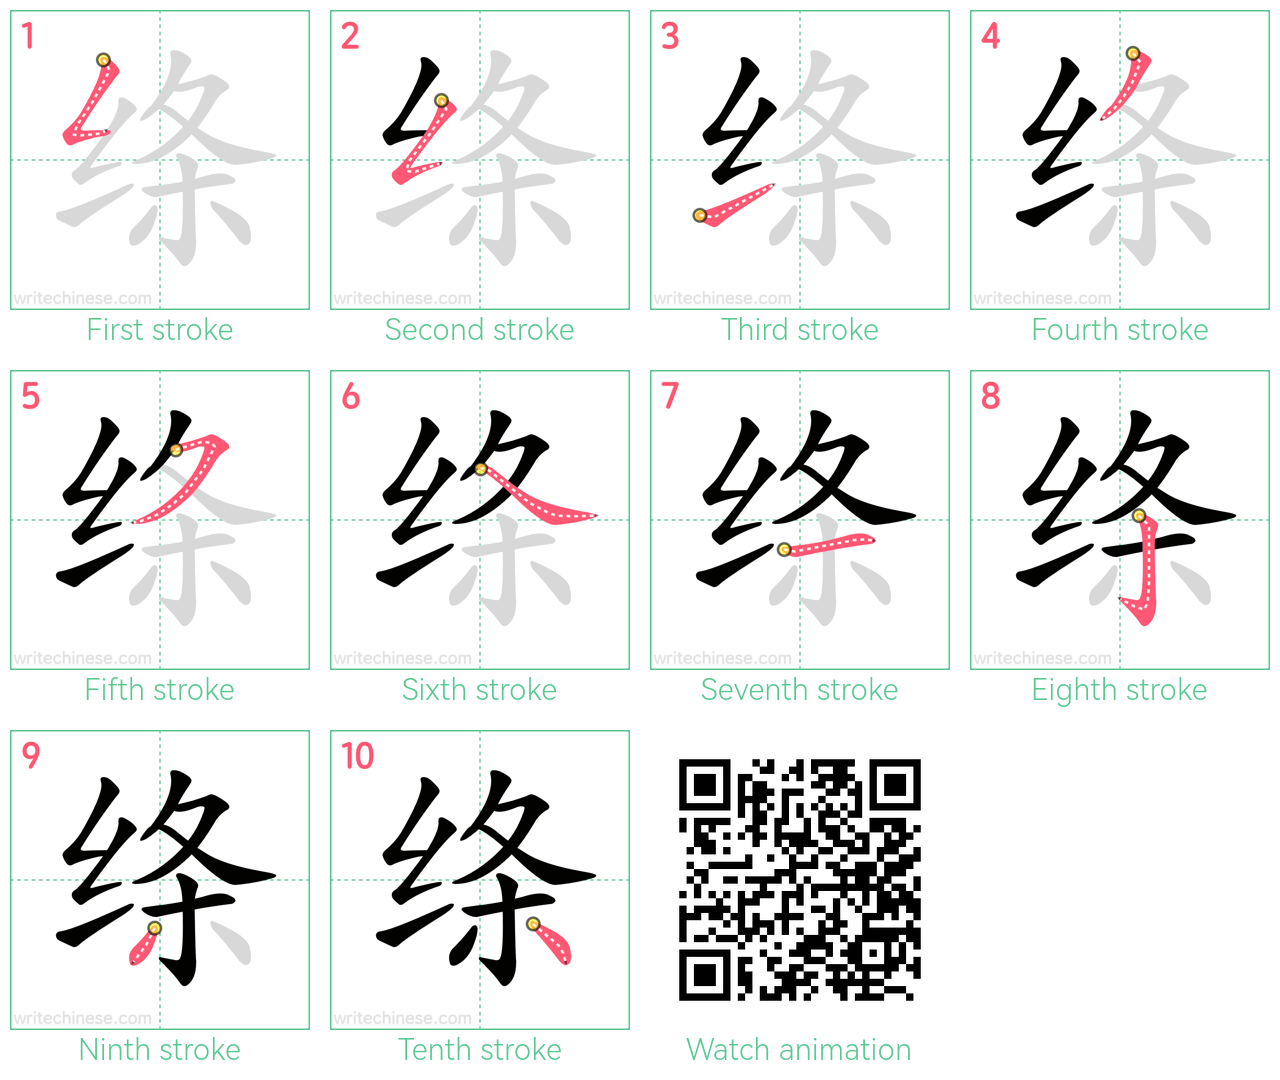 绦 step-by-step stroke order diagrams